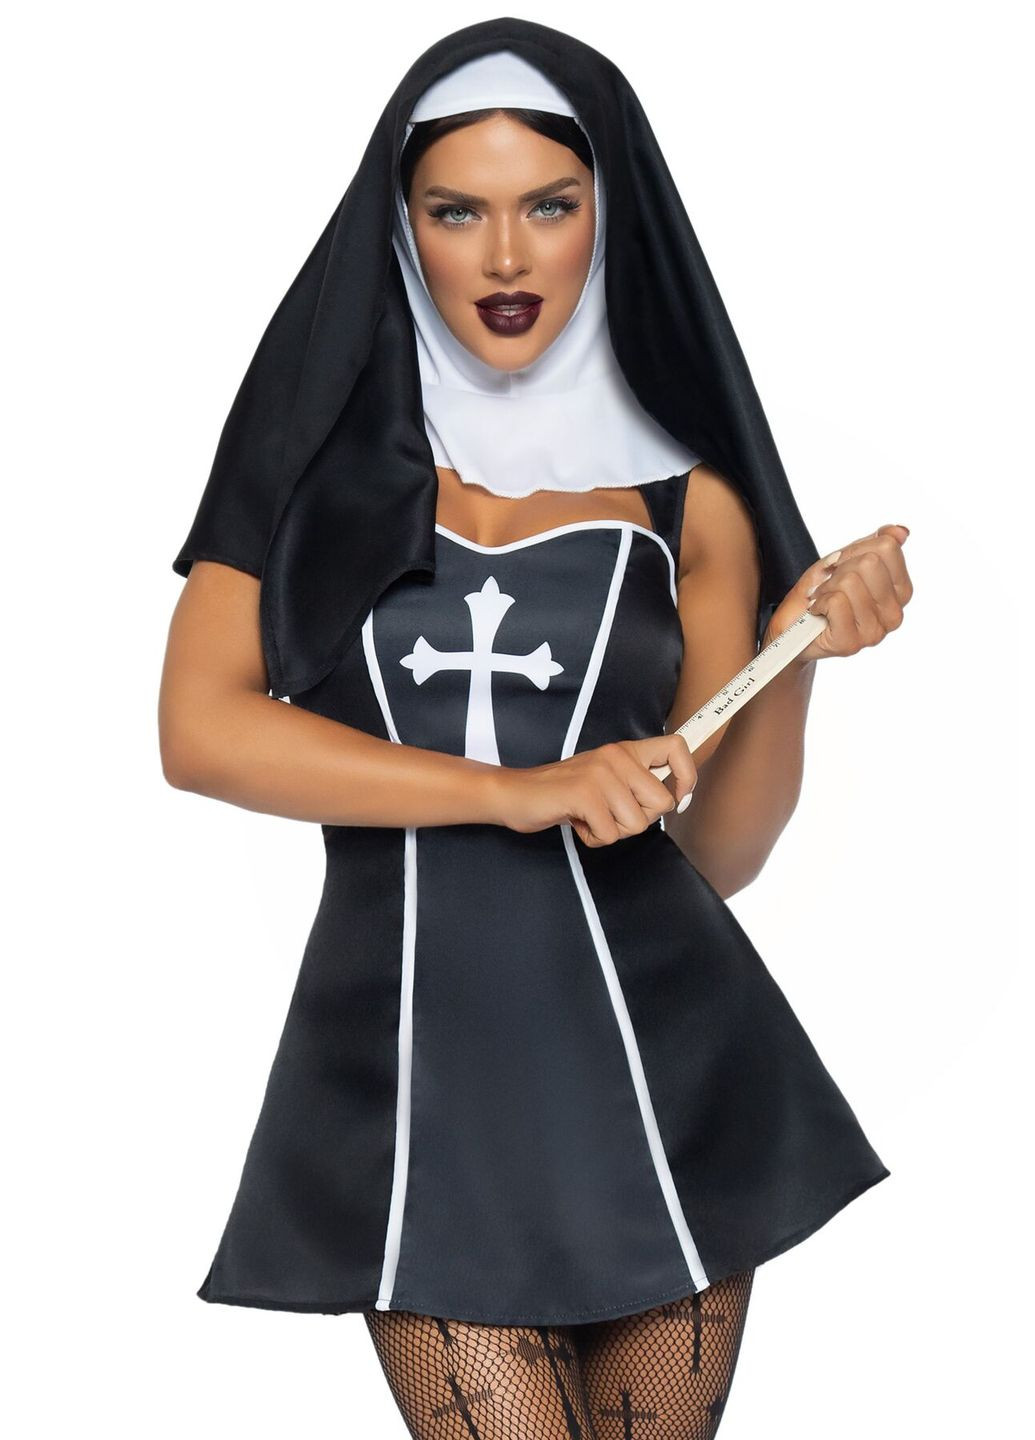 Костюм монахини Naughty Nun, платье, головной убор - CherryLove Leg Avenue (282959024)